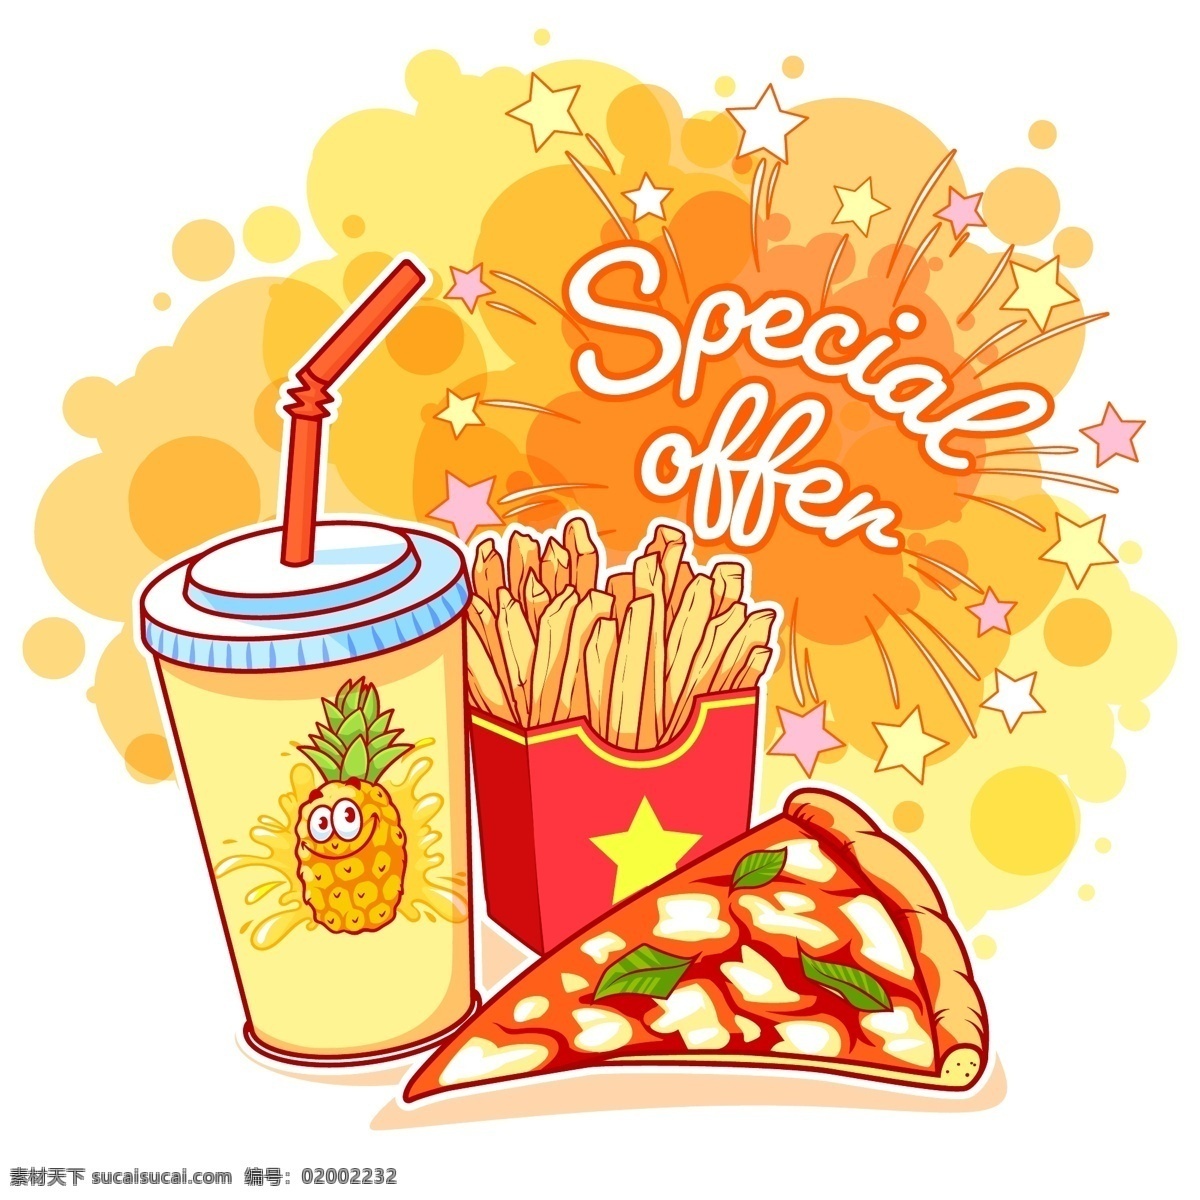 彩绘 快餐 食品 特价 海报 矢量 eps格式 可乐 薯条 菠萝汁 披萨 special offer 矢量图 白色